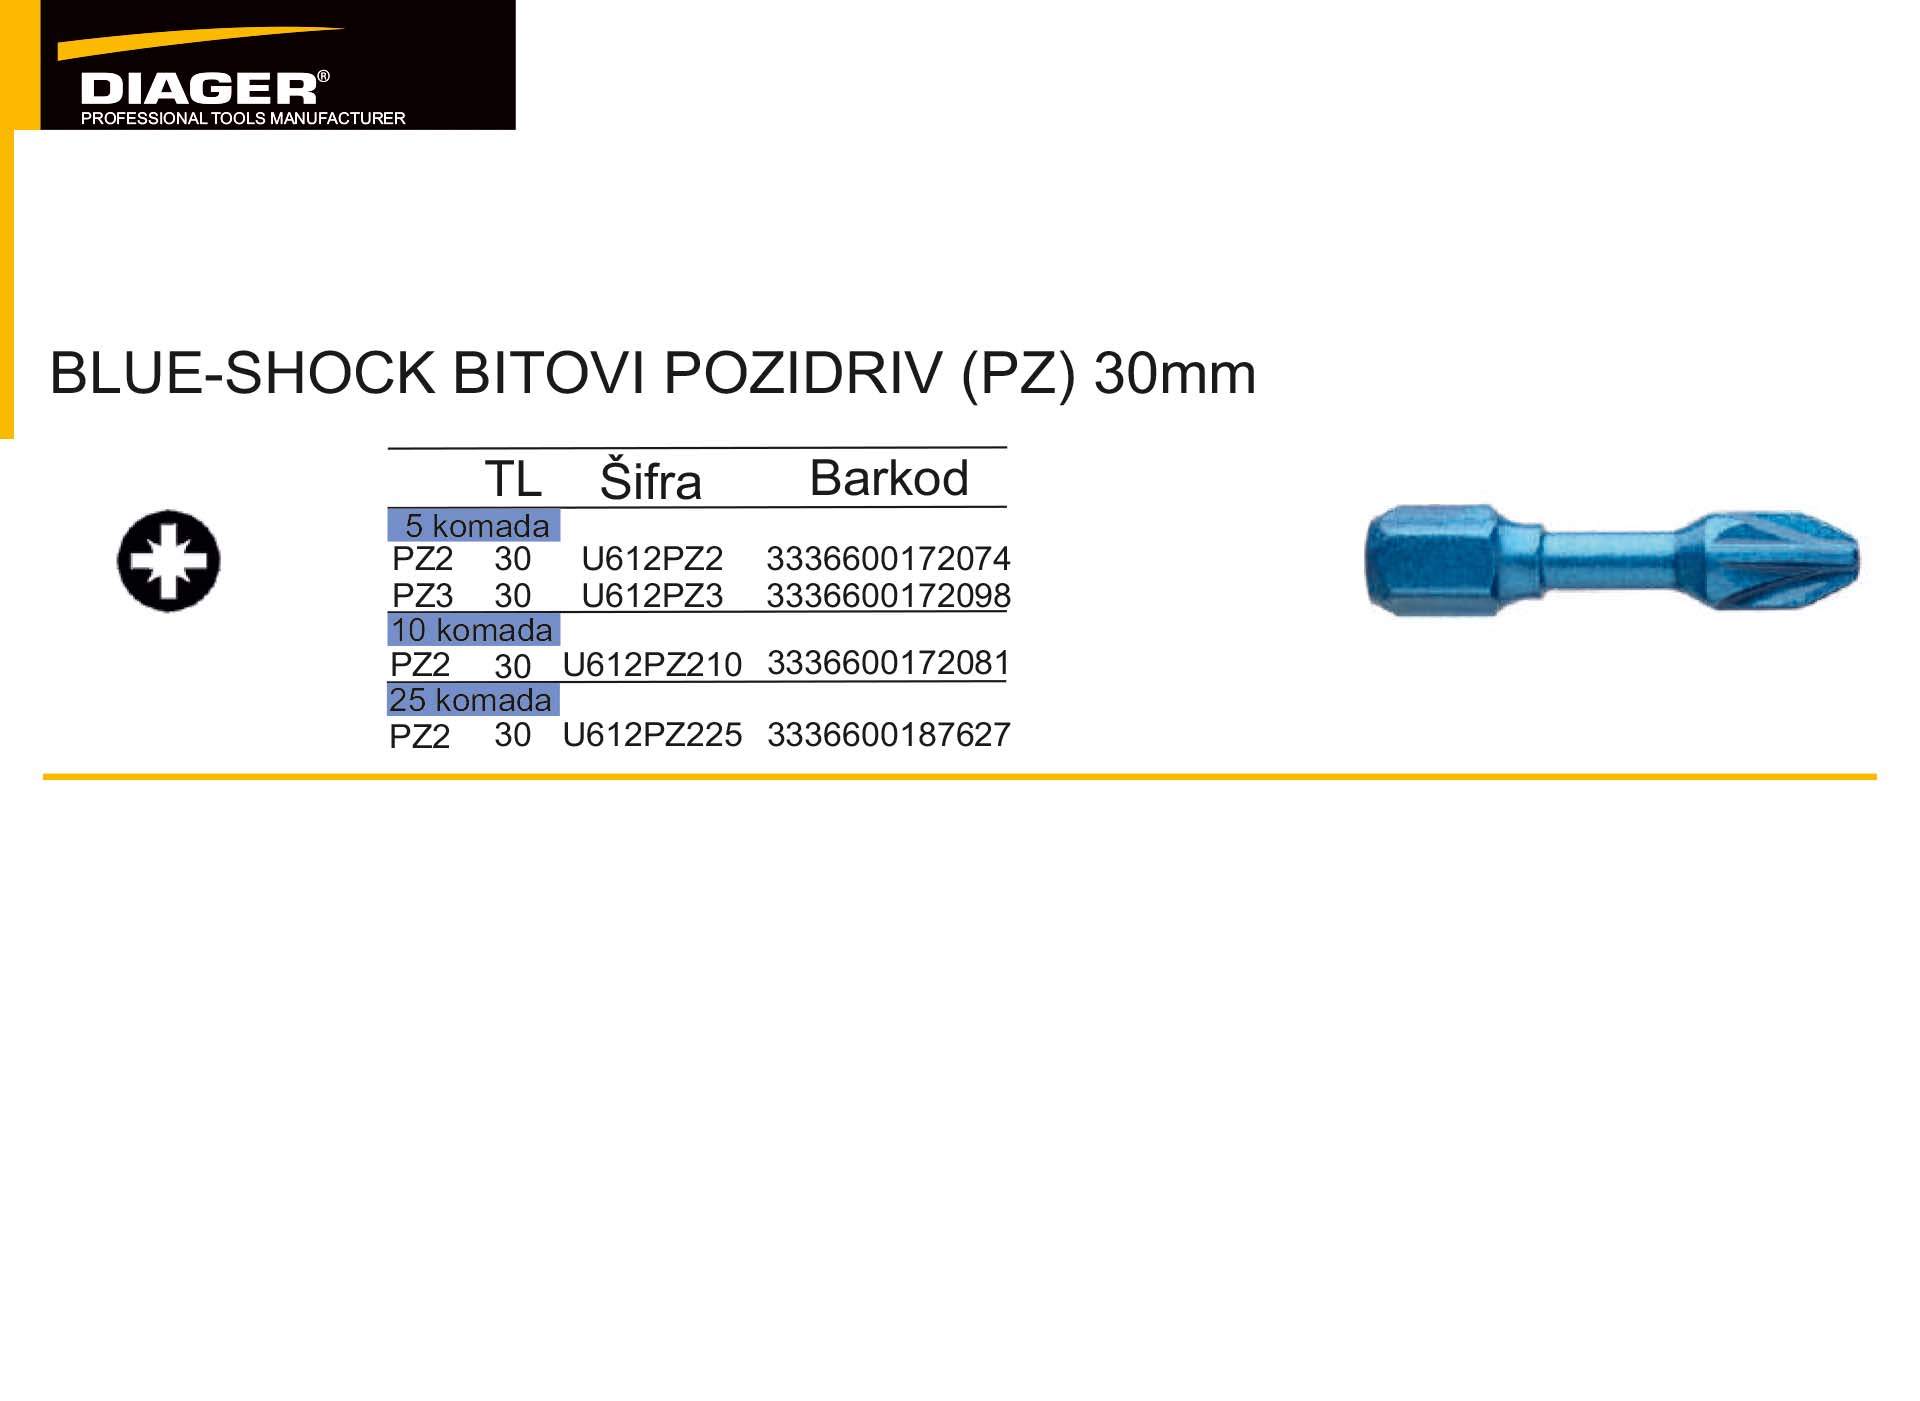 BLUE-SHOCK BITOVI POZIDRIV (PZ) 30mm